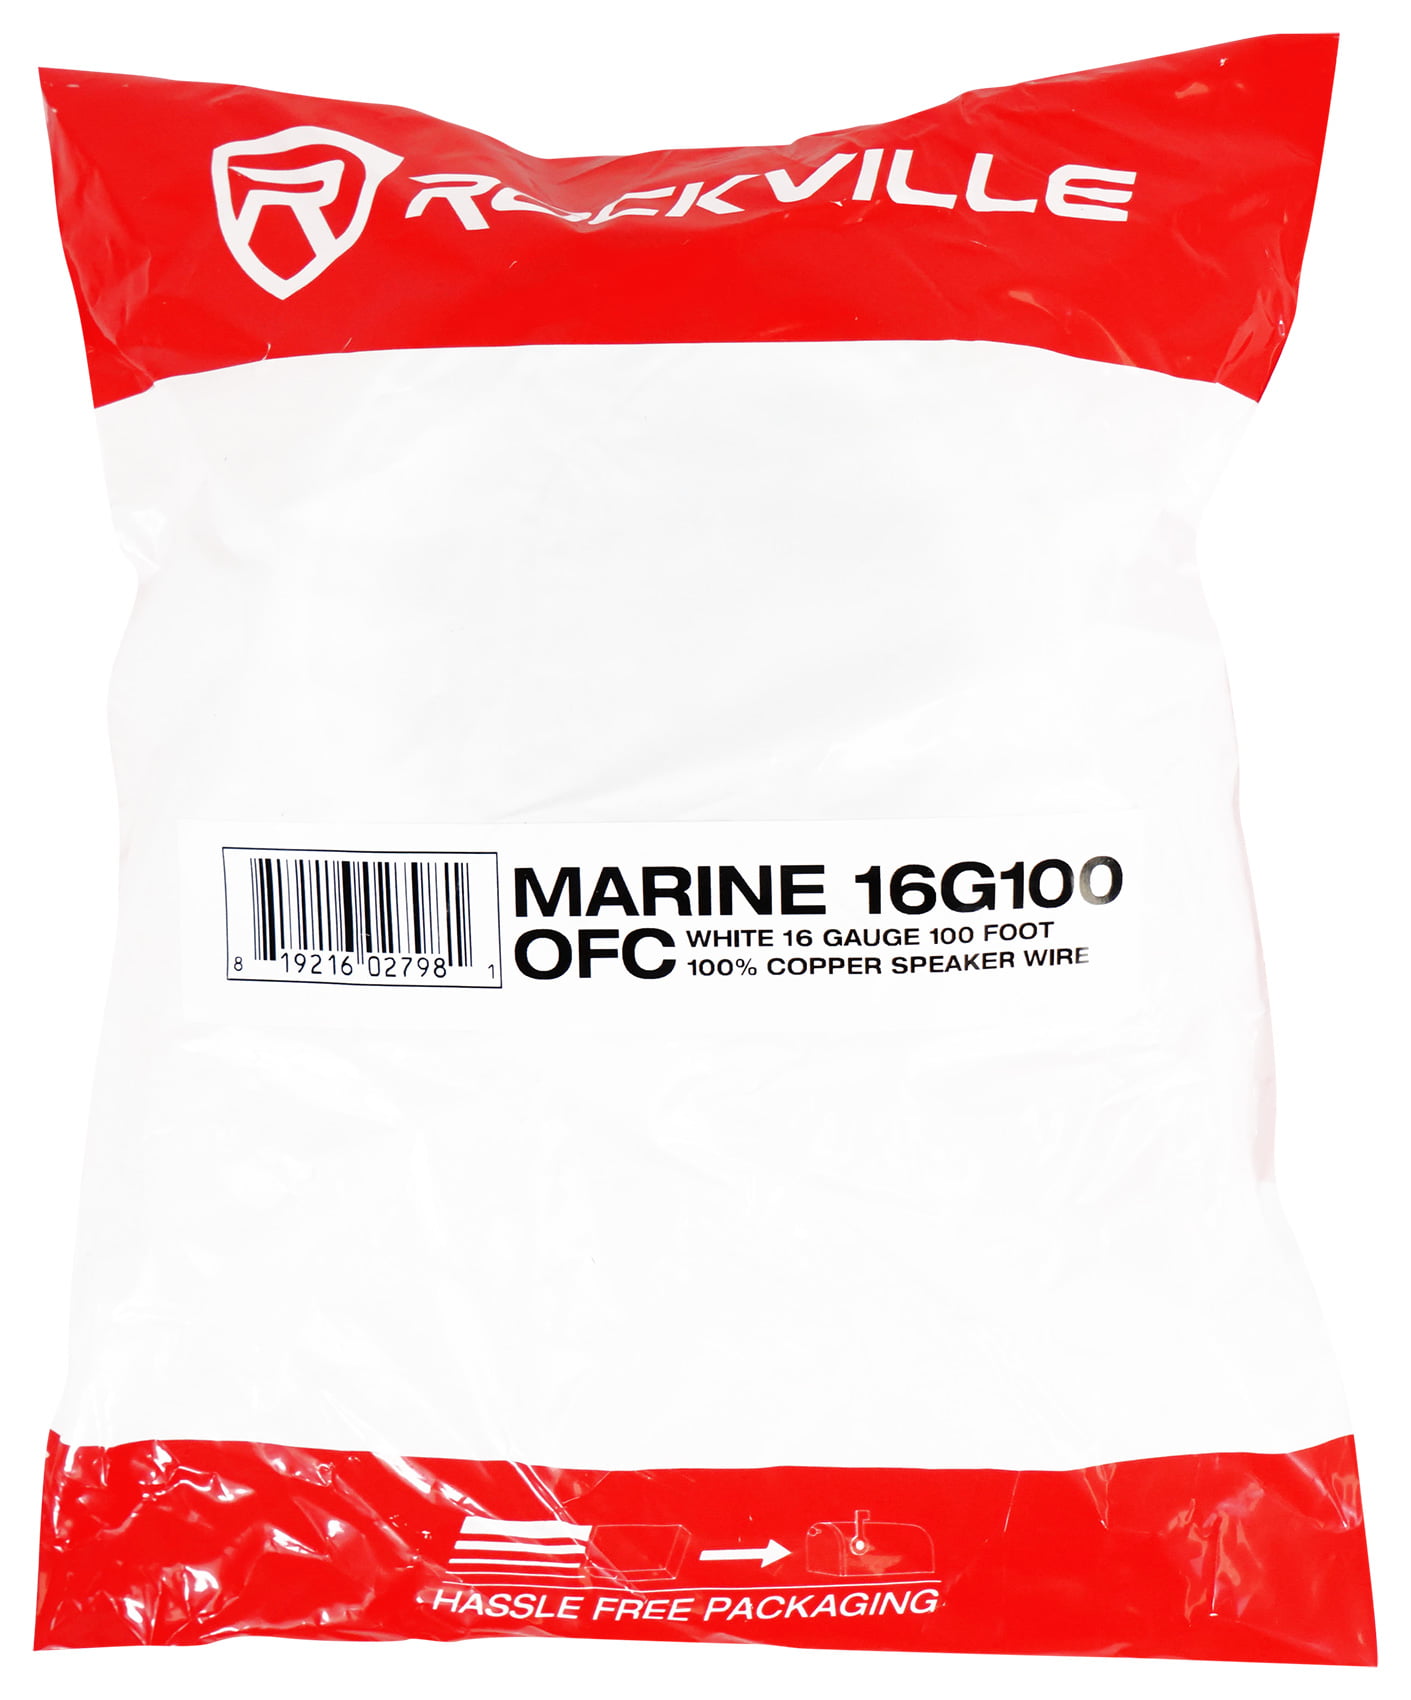 Rockville Marine 16G100 OFC 16 Gauge 100 Foot 100% Copper Speaker Wire White